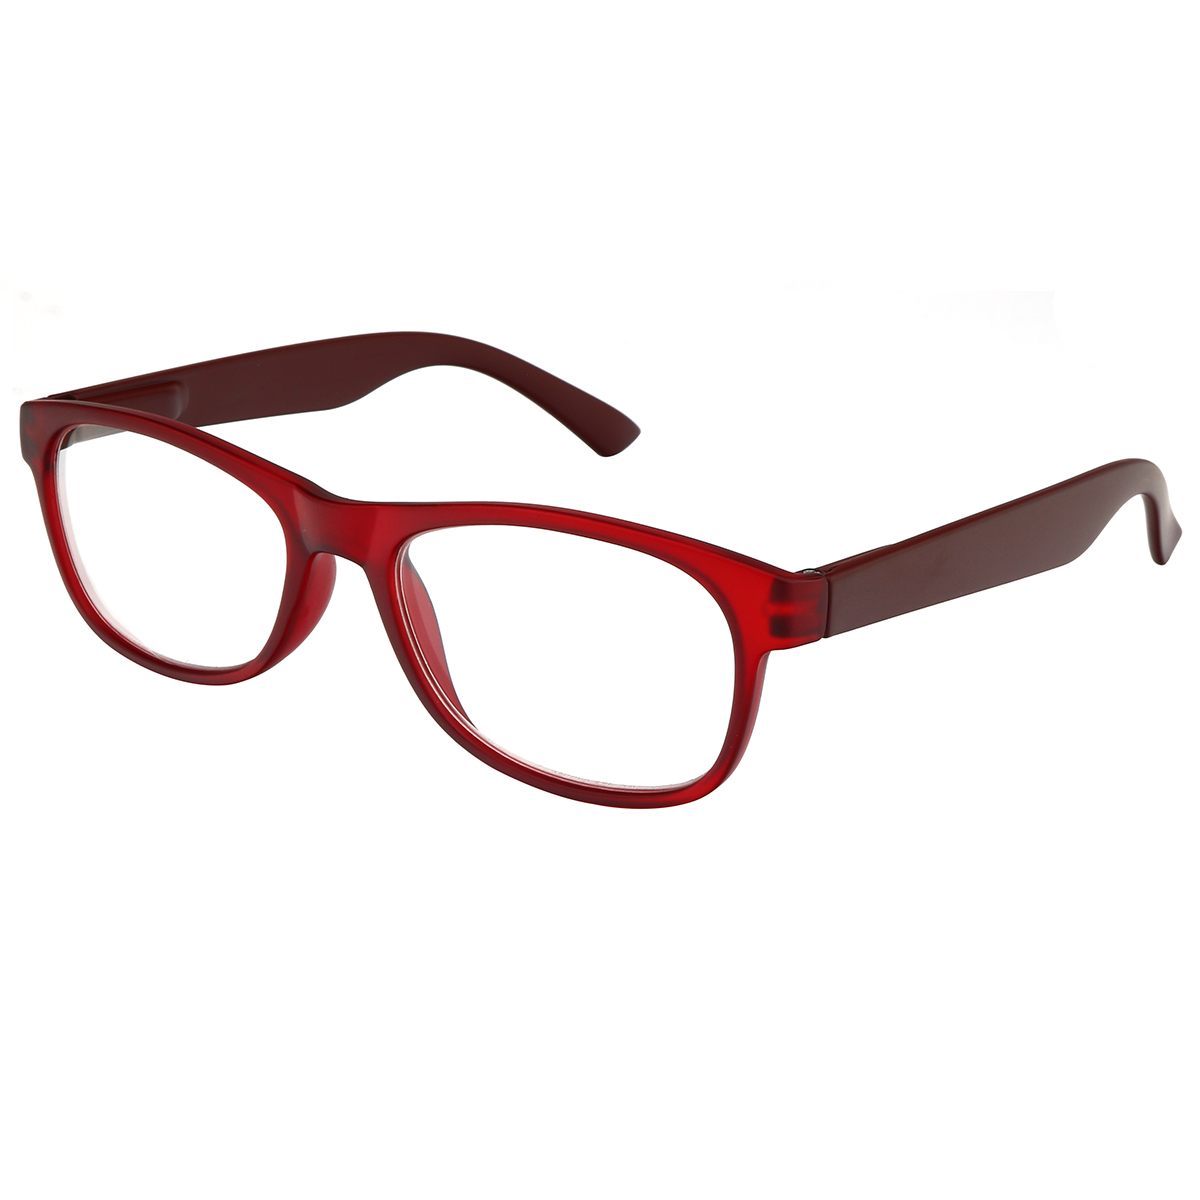 Oasis - Oval Red Reading Glasses for Men & Women